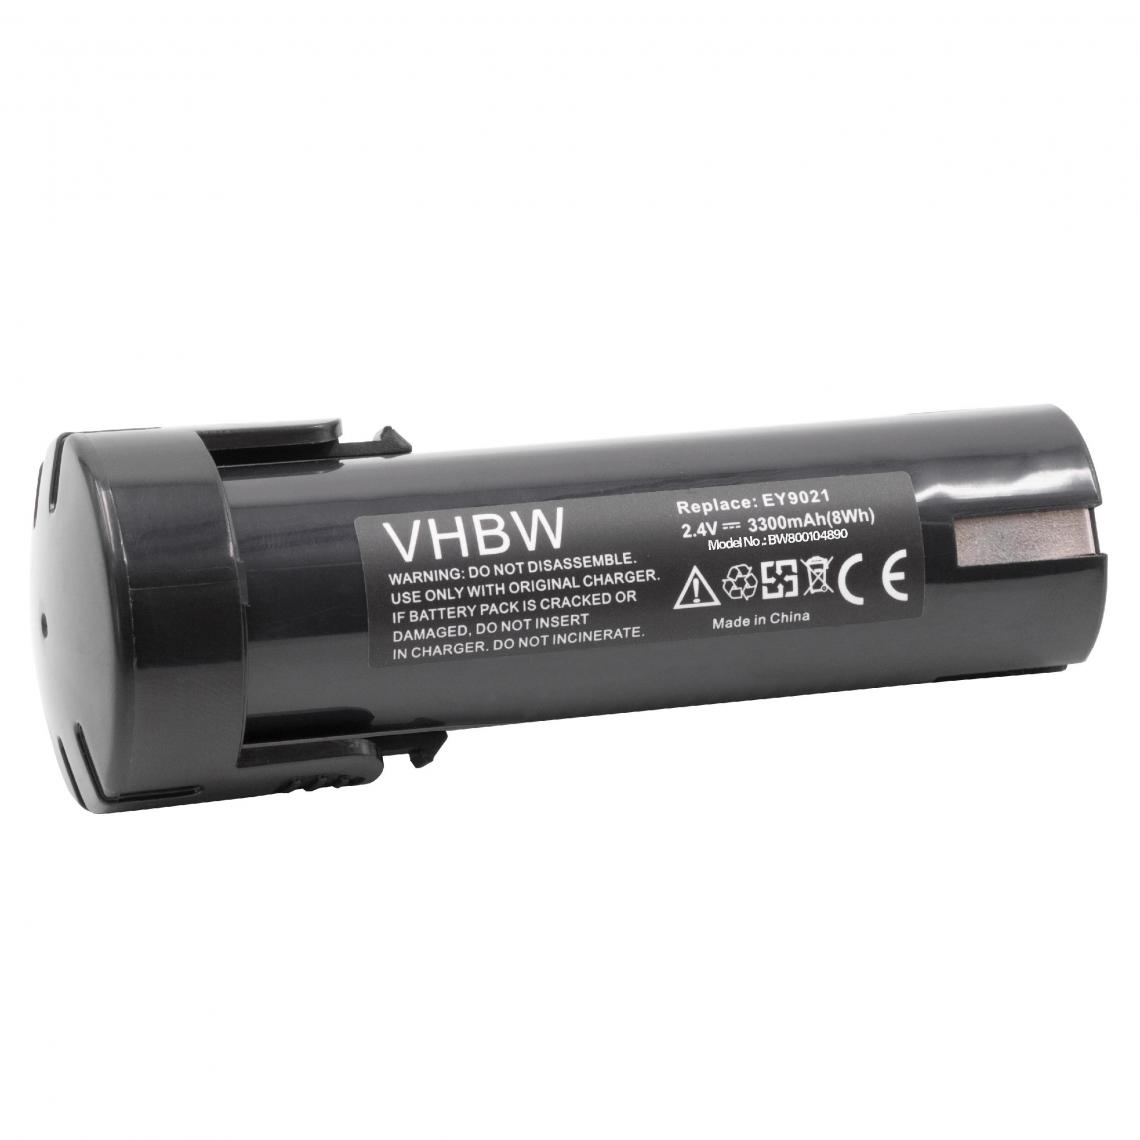 Vhbw - vhbw Batterie compatible avec ABB Pressofix 208 outil électrique (3300mAh NiMH 2,4V) - Clouterie